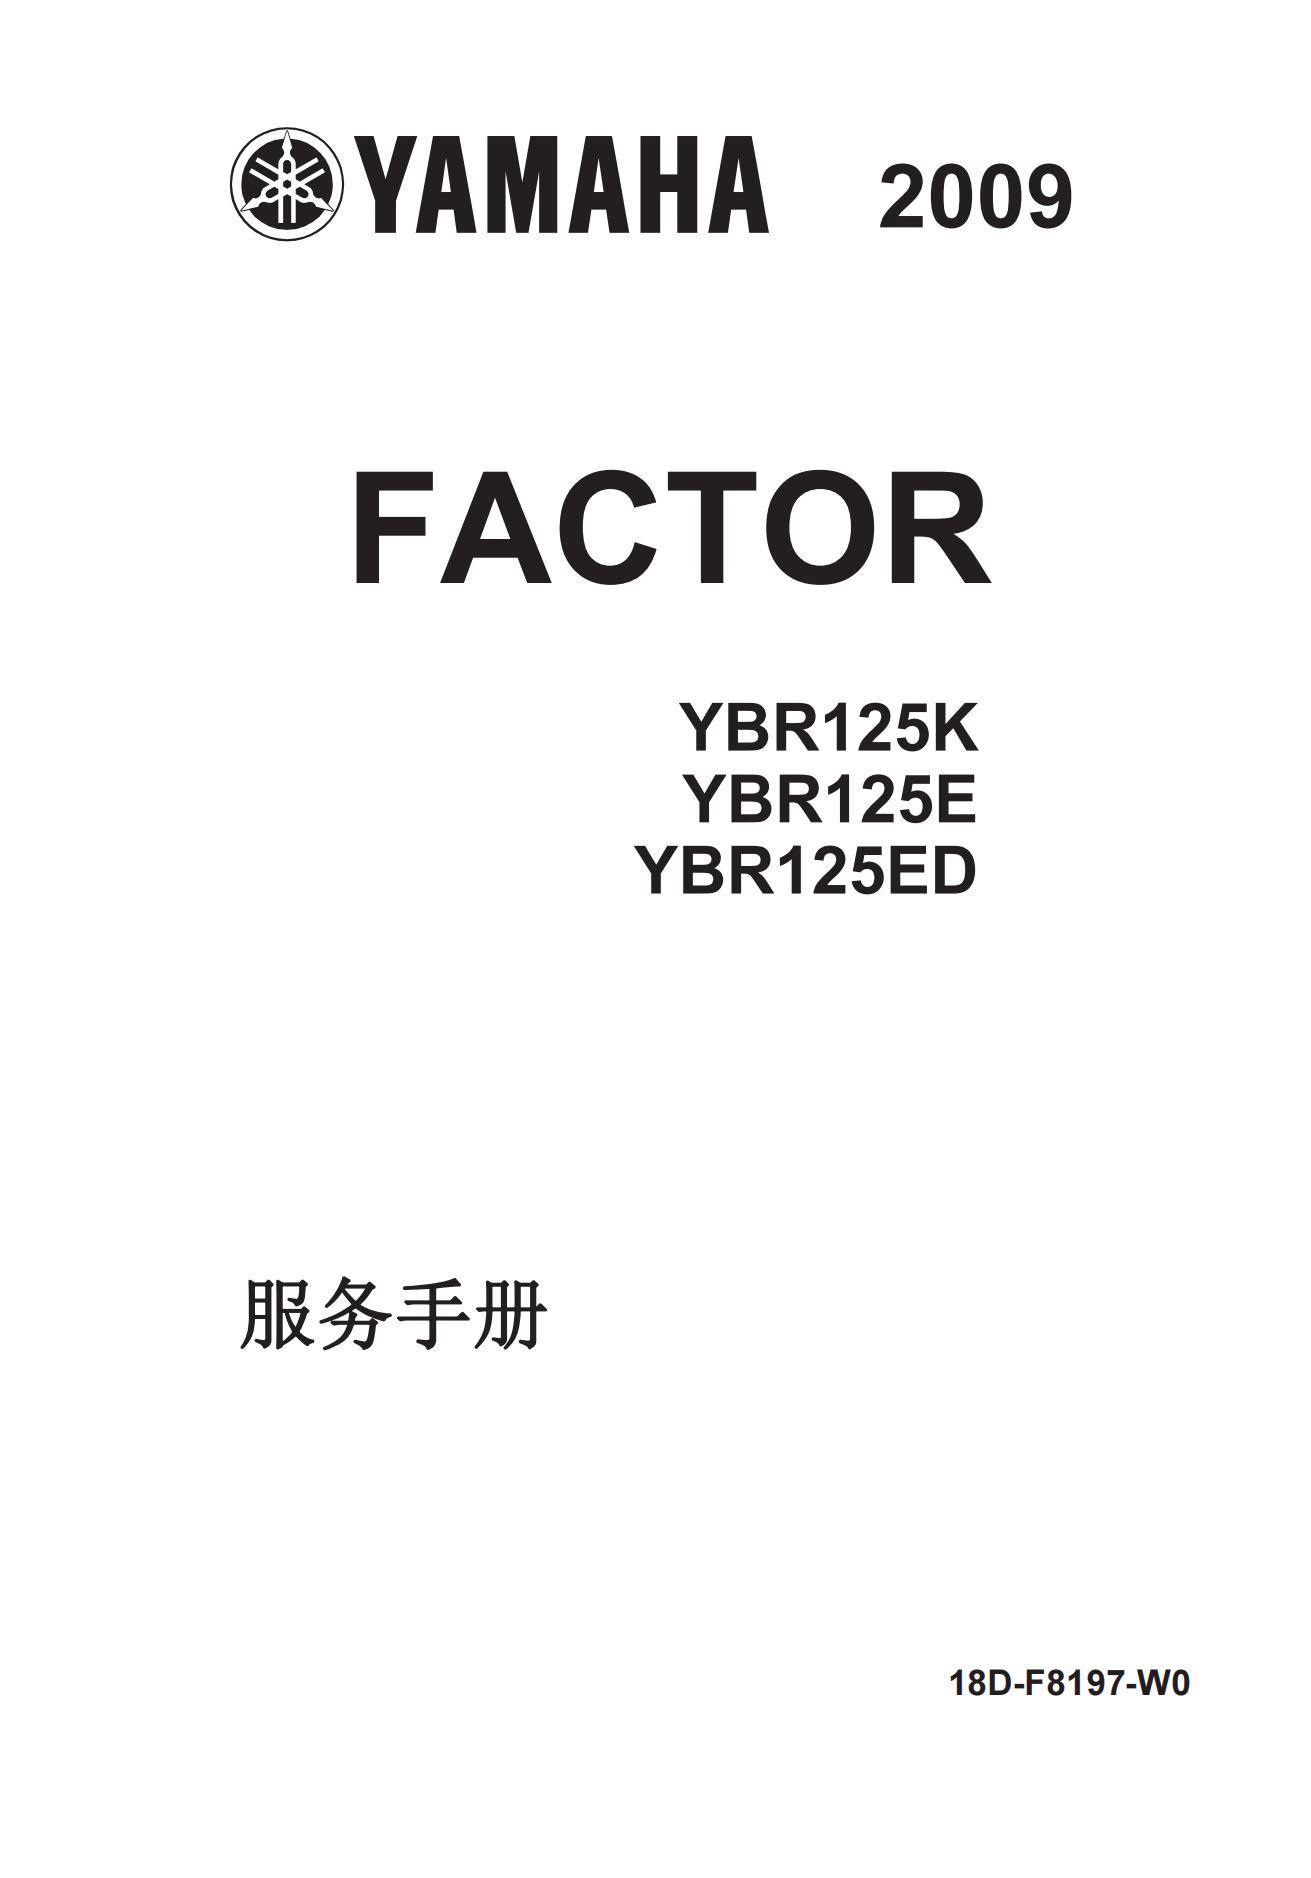 简体中文2009年雅马哈ybr125维修手册插图